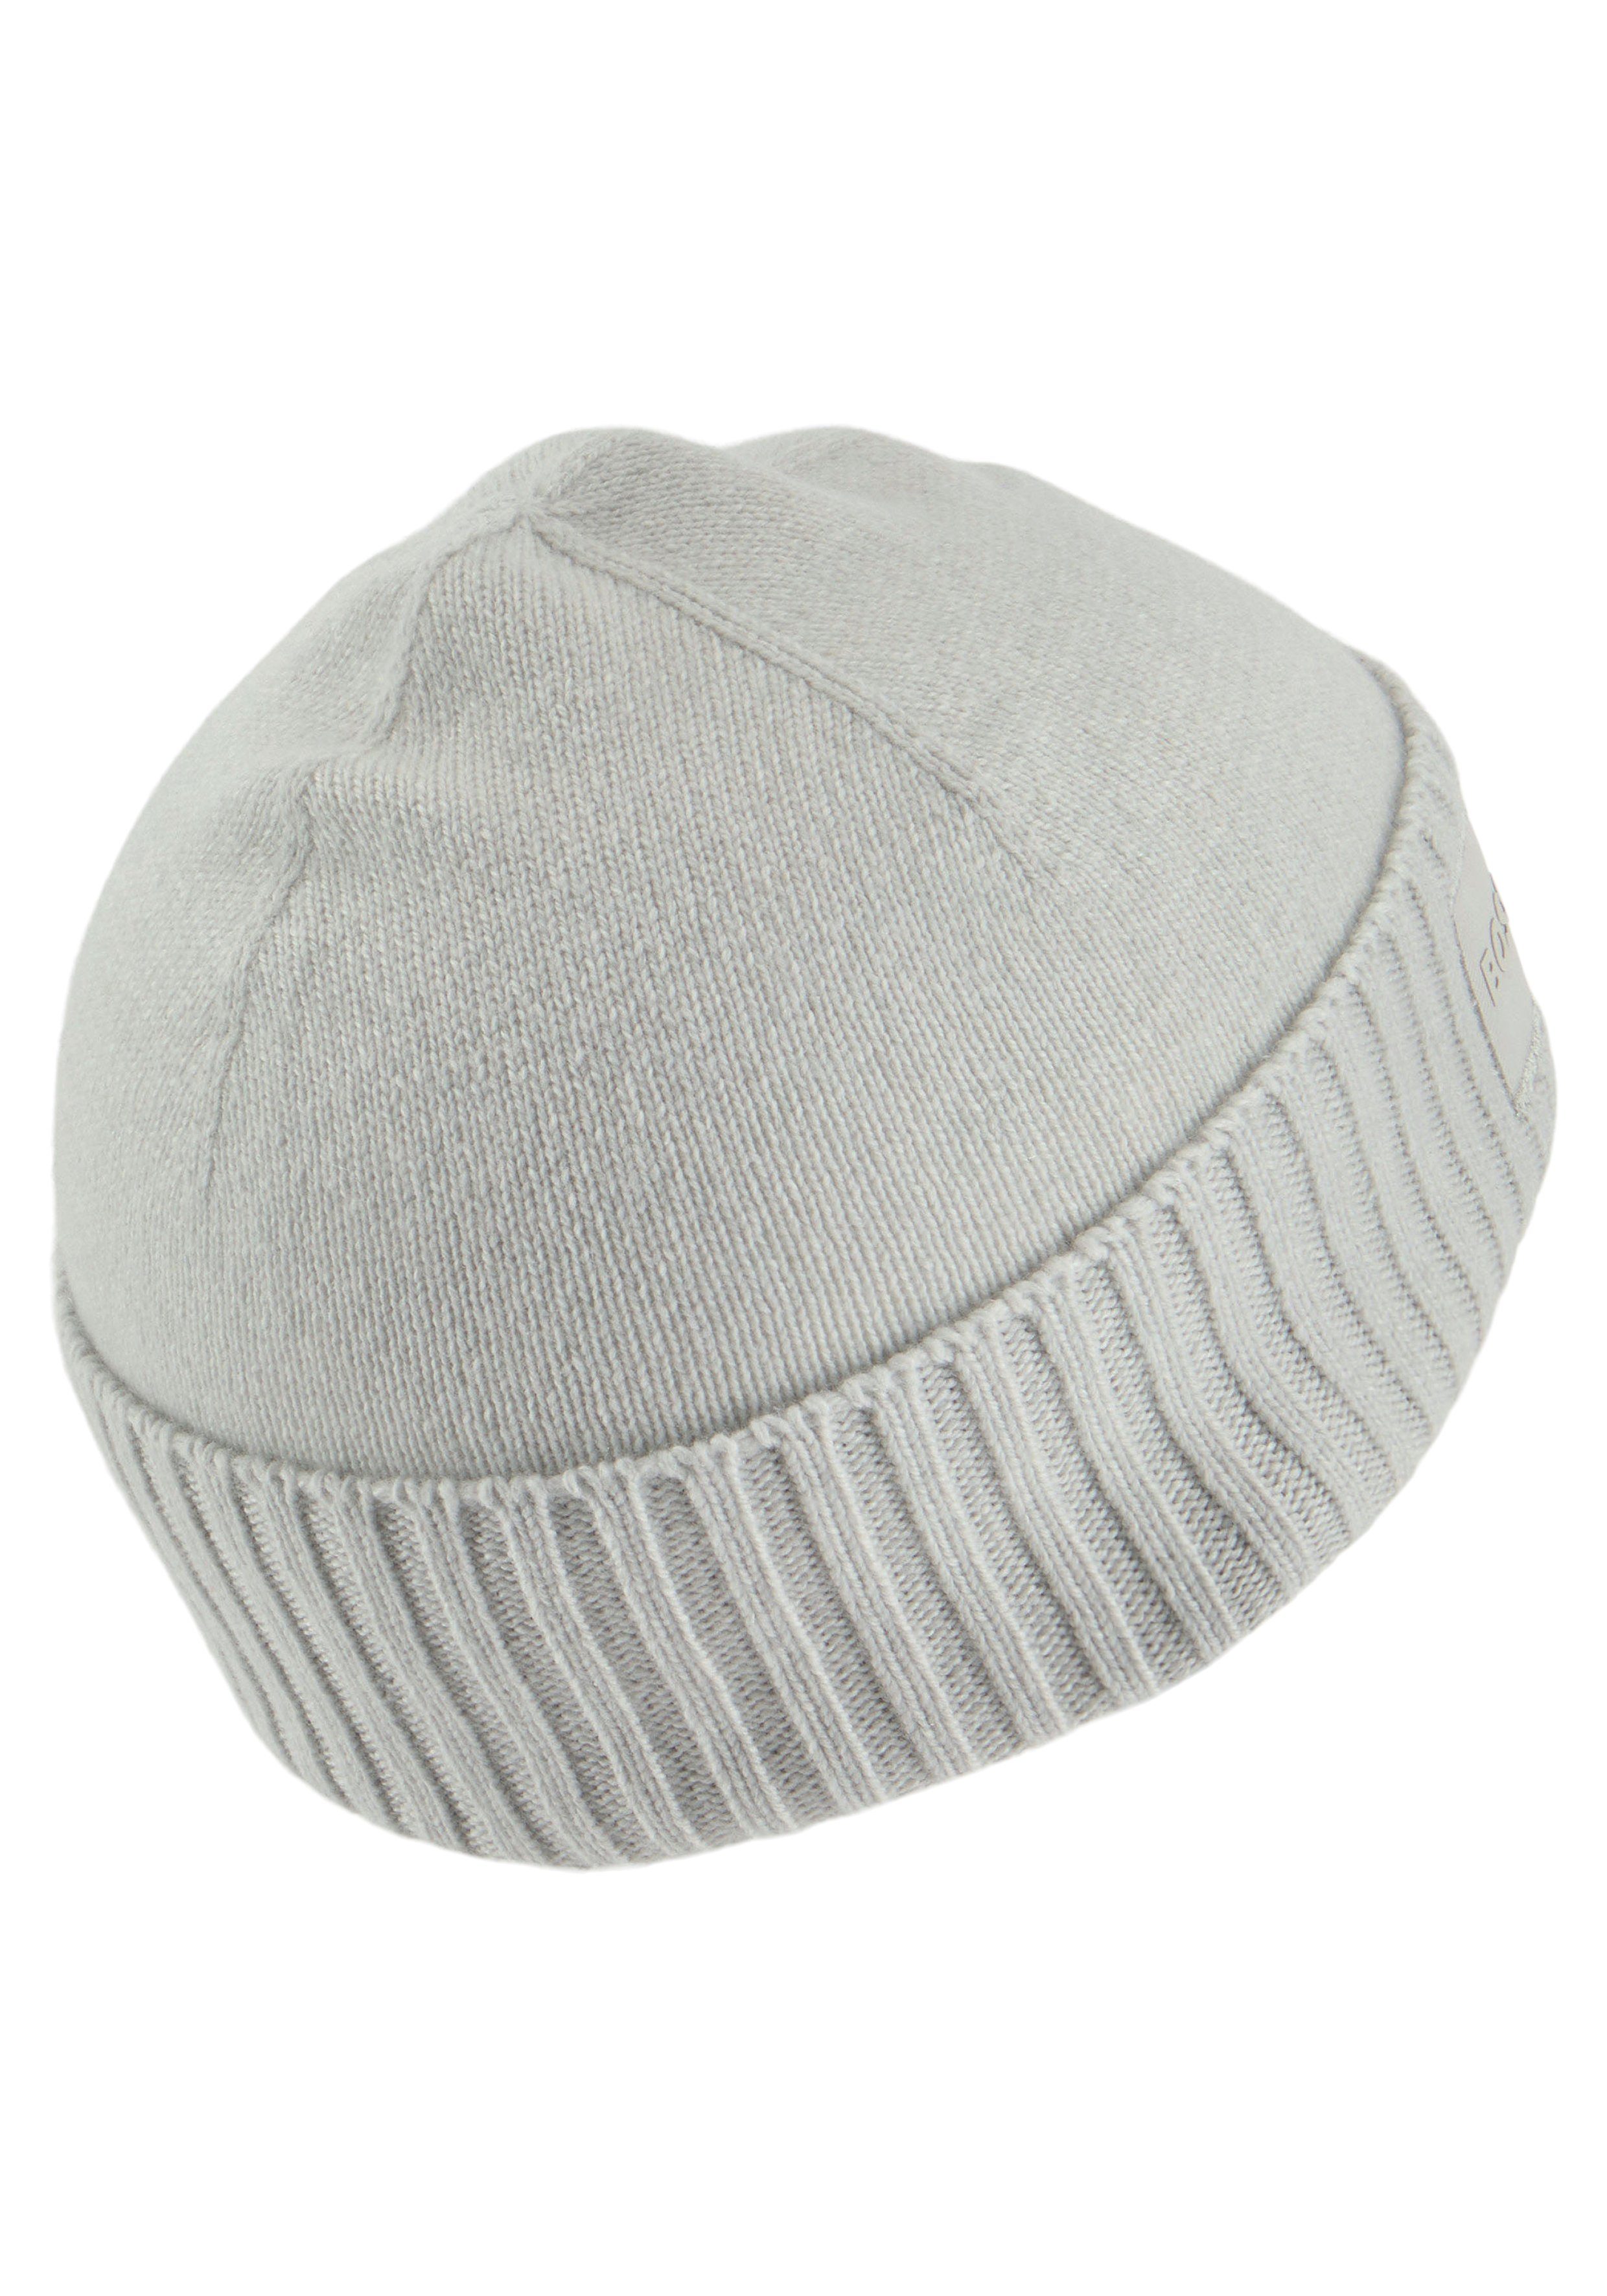 BOSS ORANGE Logostickerei Grey mit Light/Pastel passender farblich Beanie Akaio 1025086 Hat